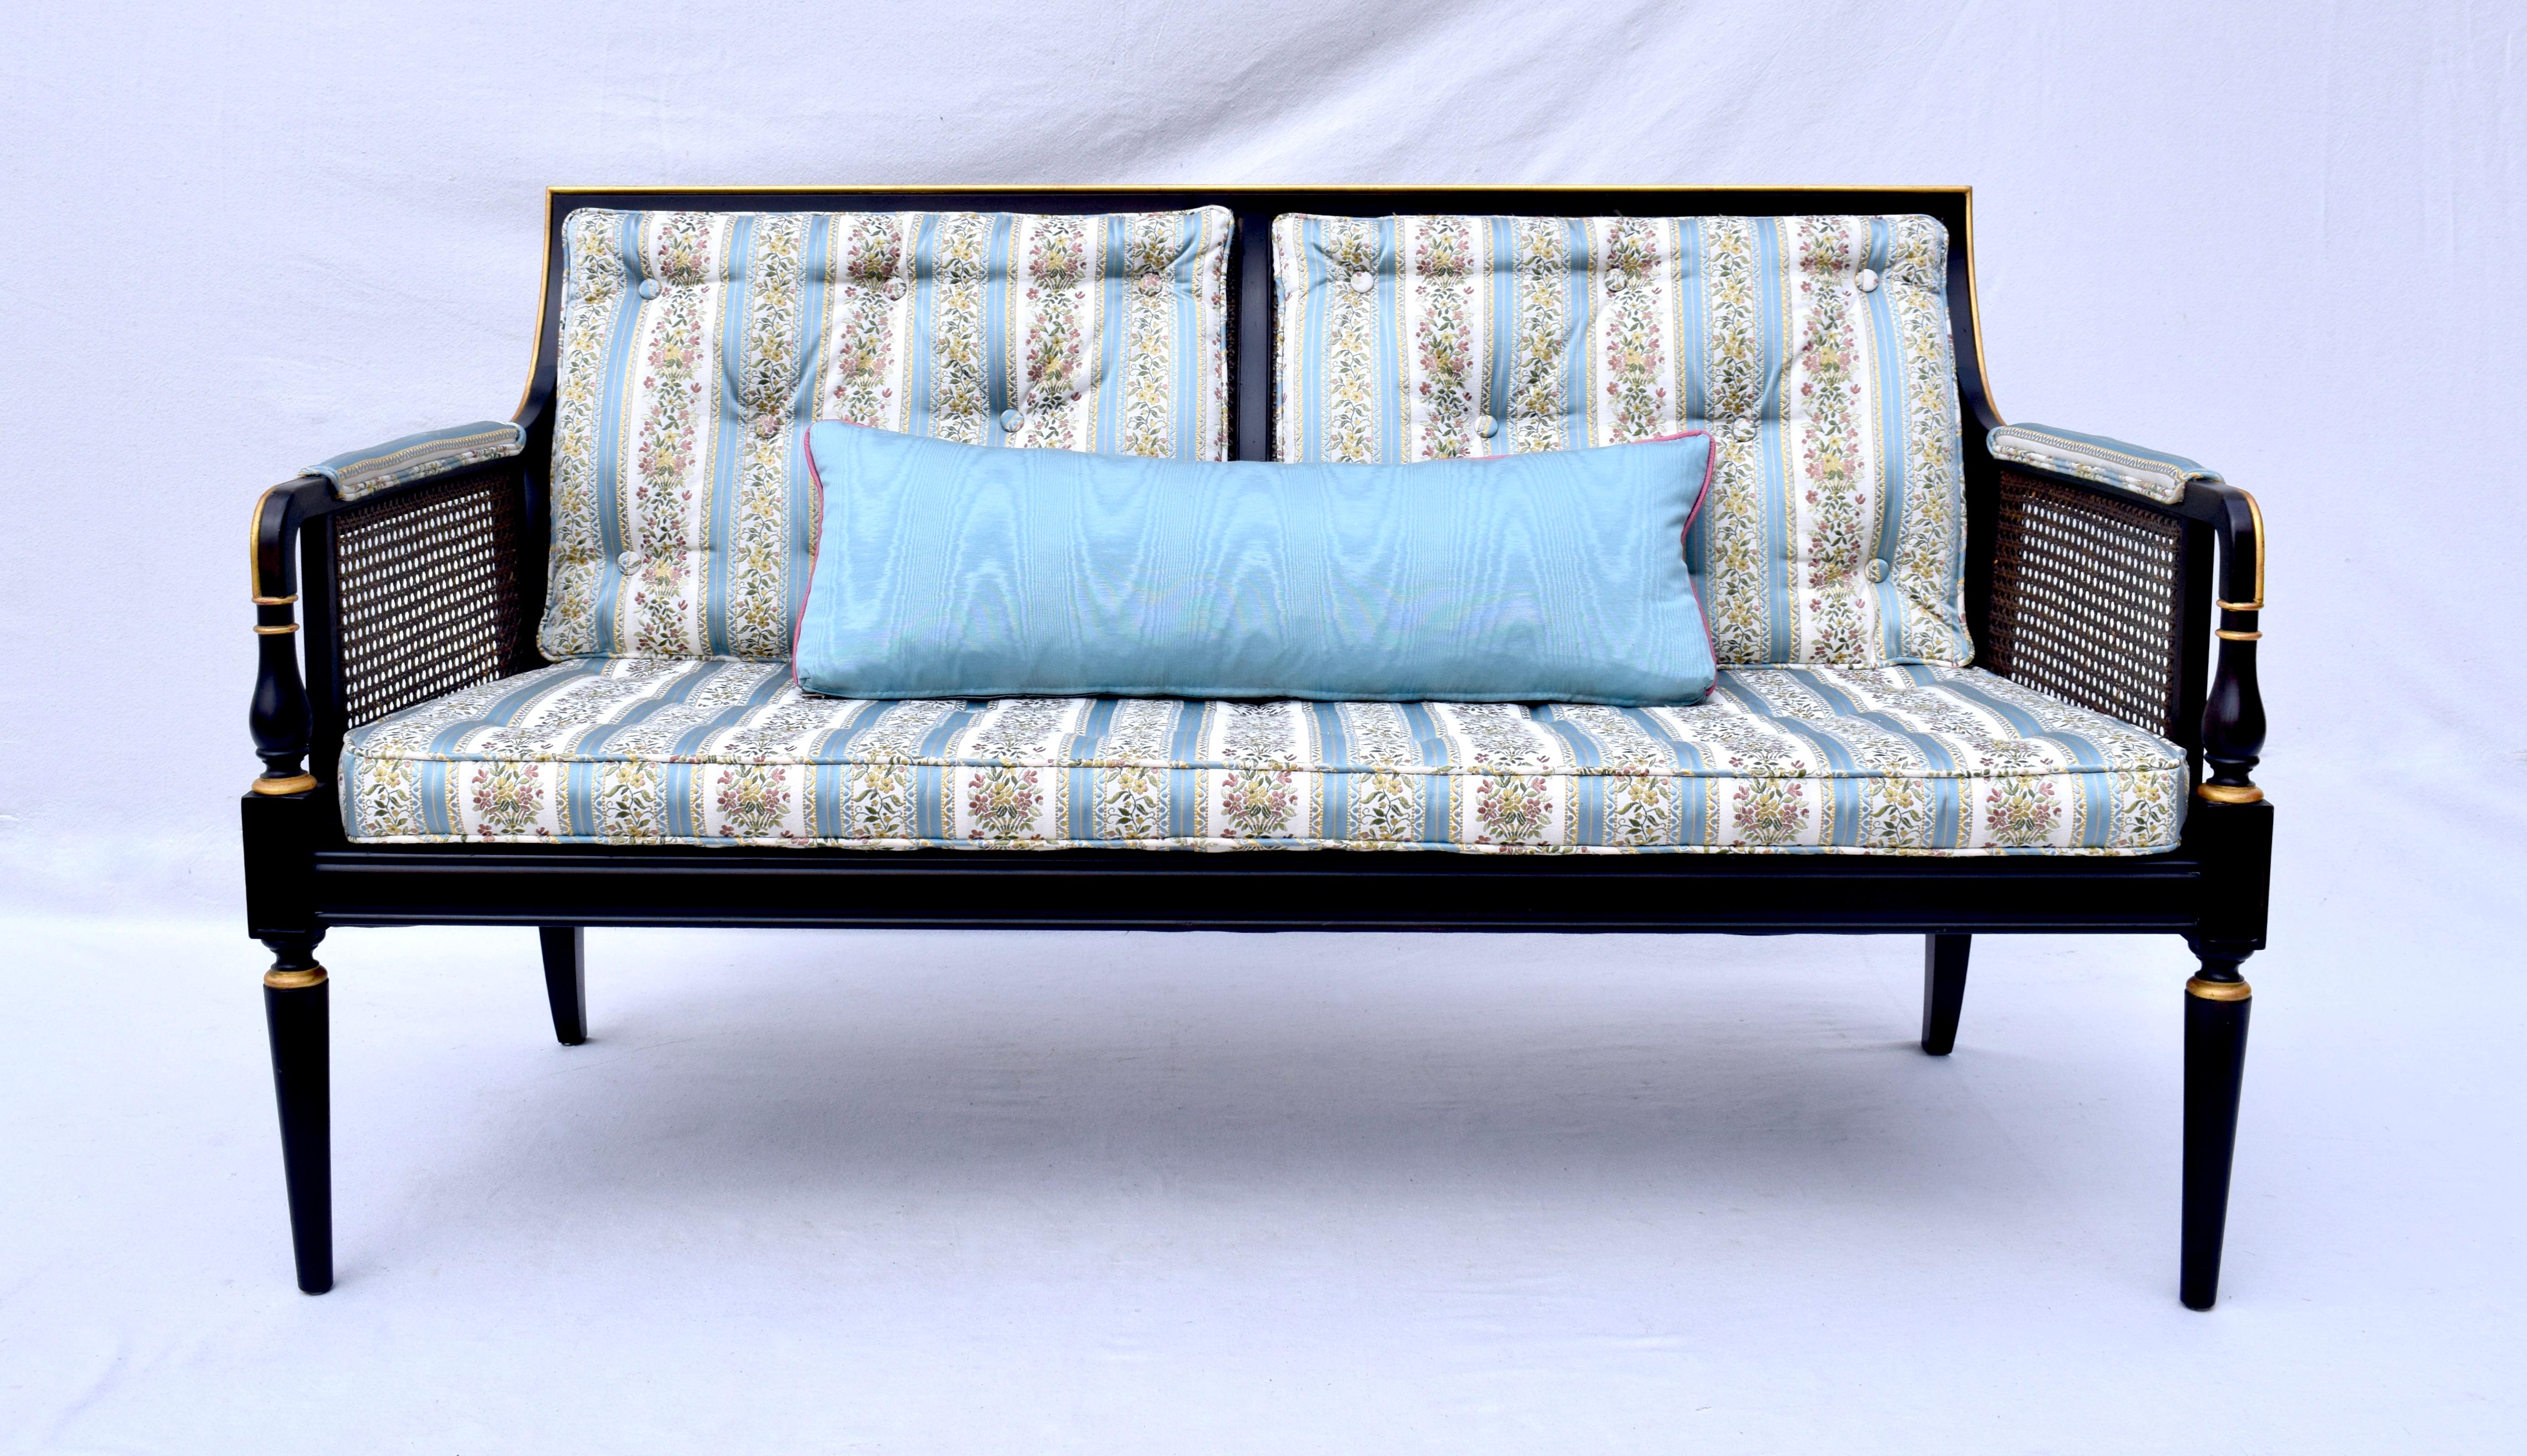 Baker Furniture Regency-Stil Caned Sofa in allen ursprünglichen schwarzen Lack-Finish mit Gold vergoldet Akzente, gepolstert in blau-weiß bestickt floralem Stoff. Exquisite geschmeidige Linien in selten verwendeten  Bedingung. Sitz: 26,5